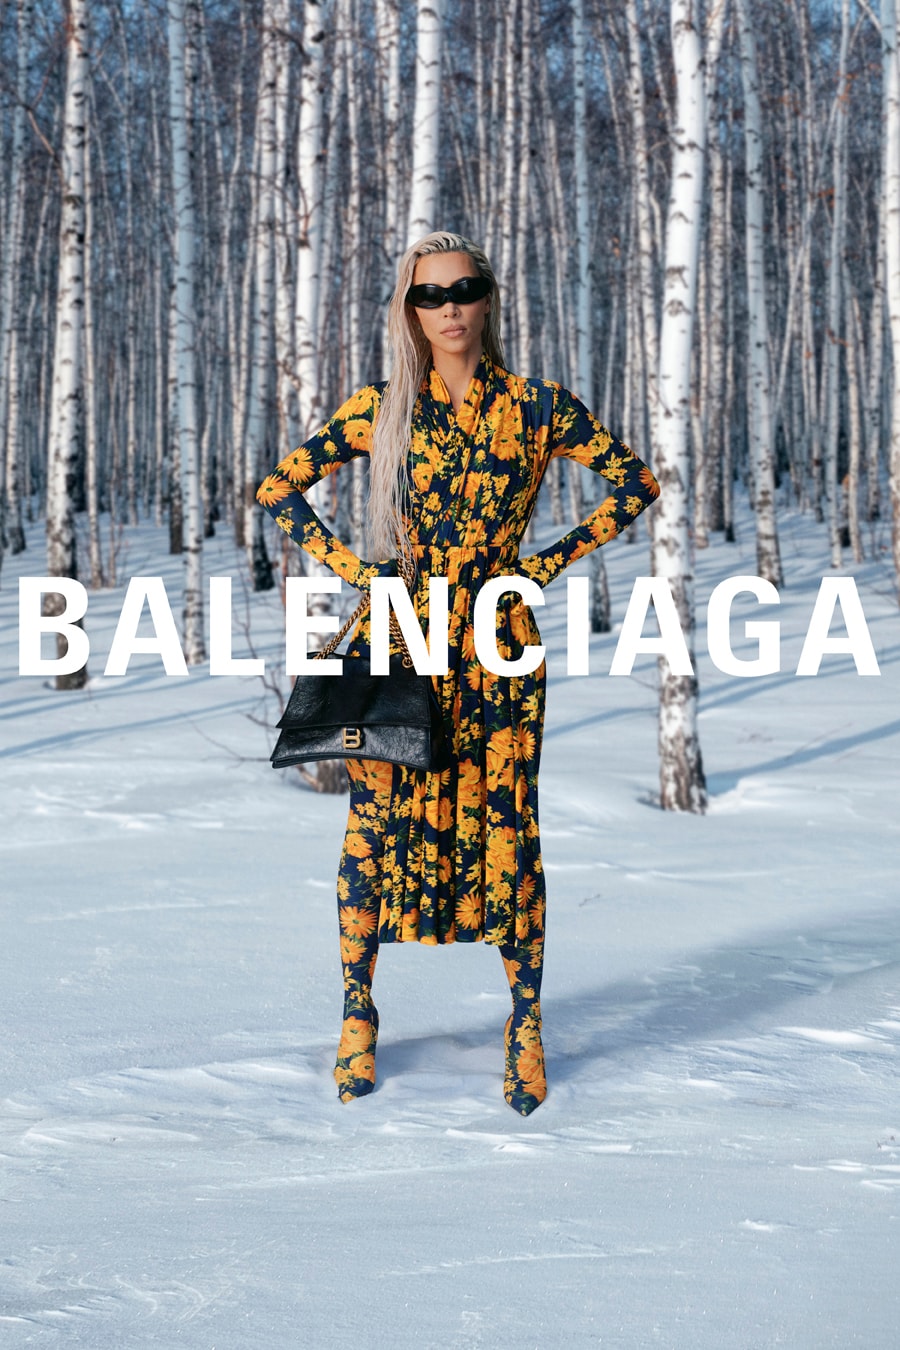 See Demna Gvasalia's debut Balenciaga campaign